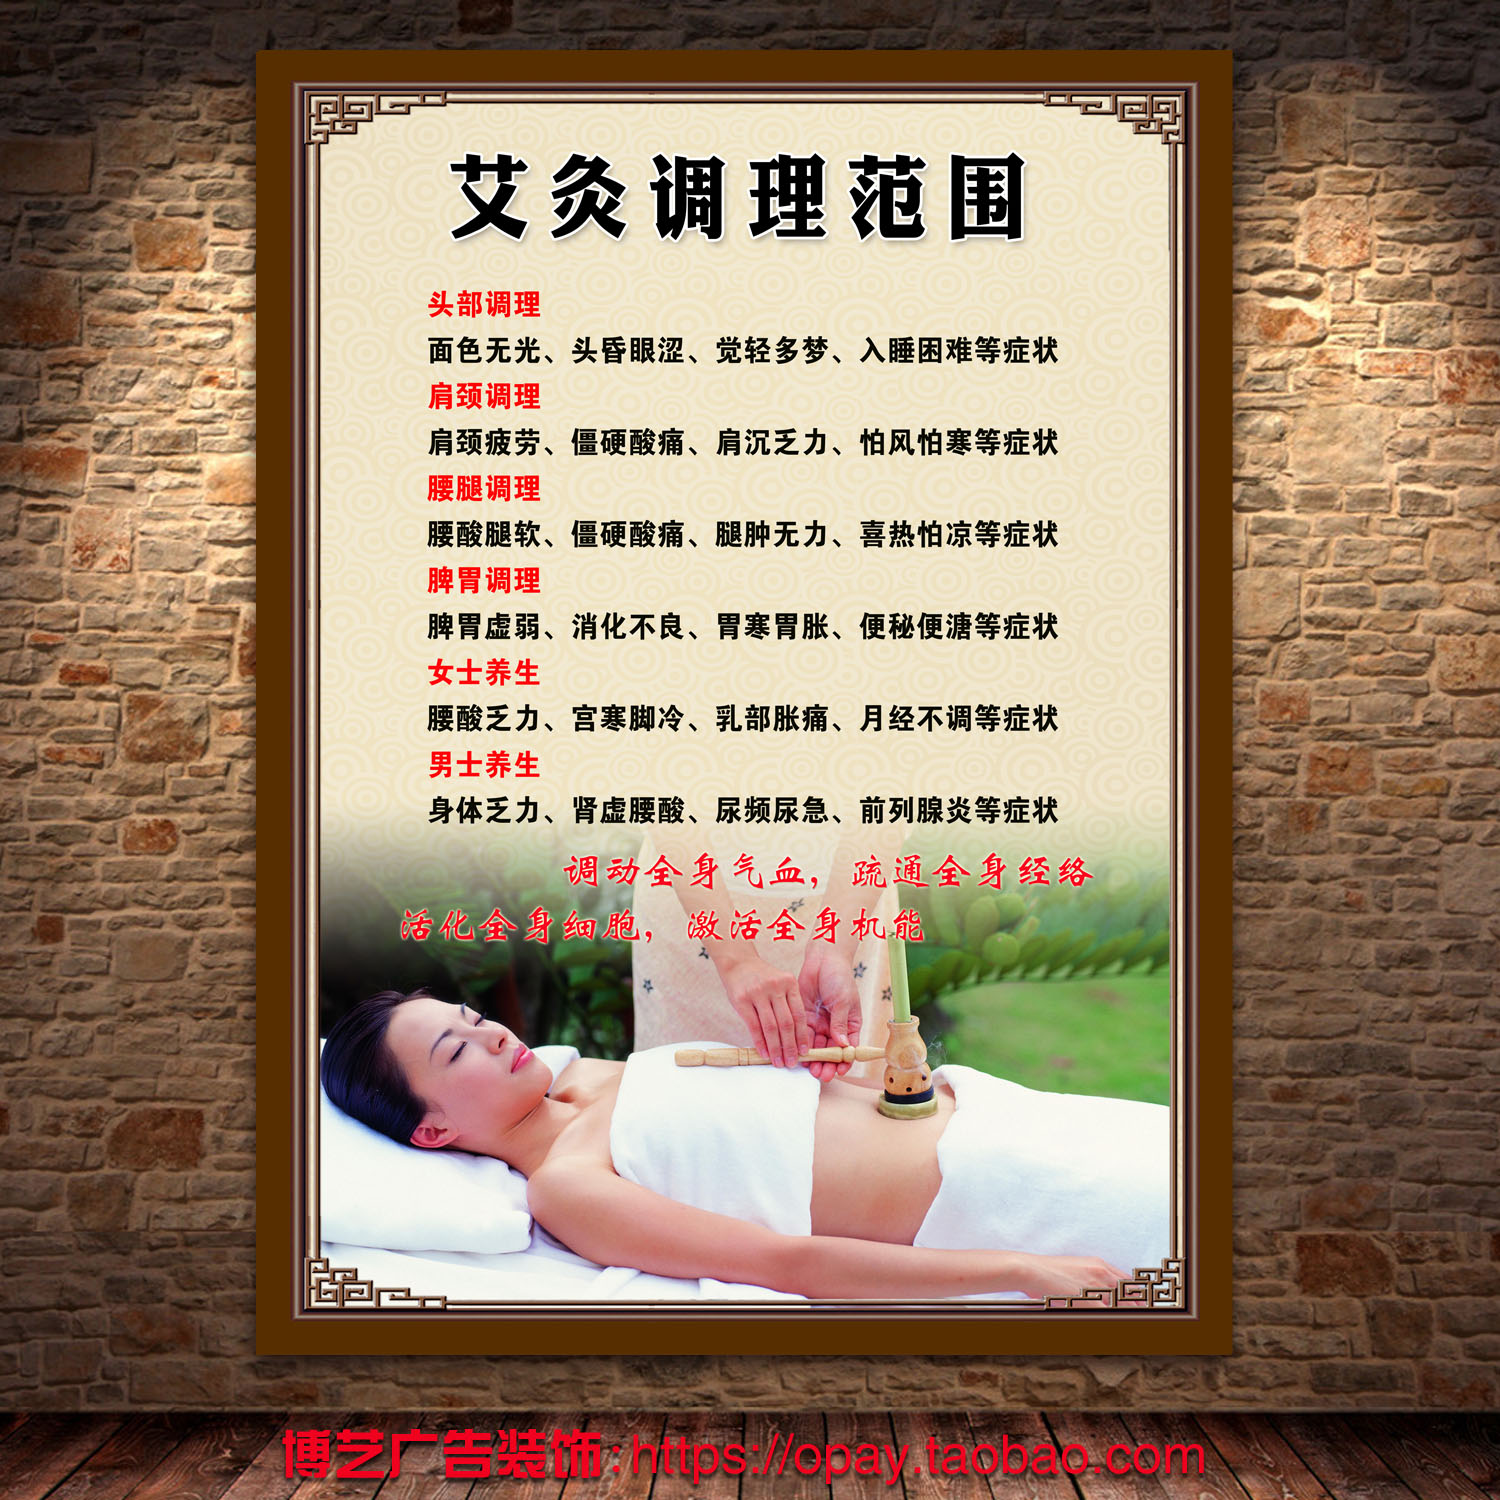 中医养生馆美容院艾灸的调理范围海报挂图展板看板贴画图片宣传画